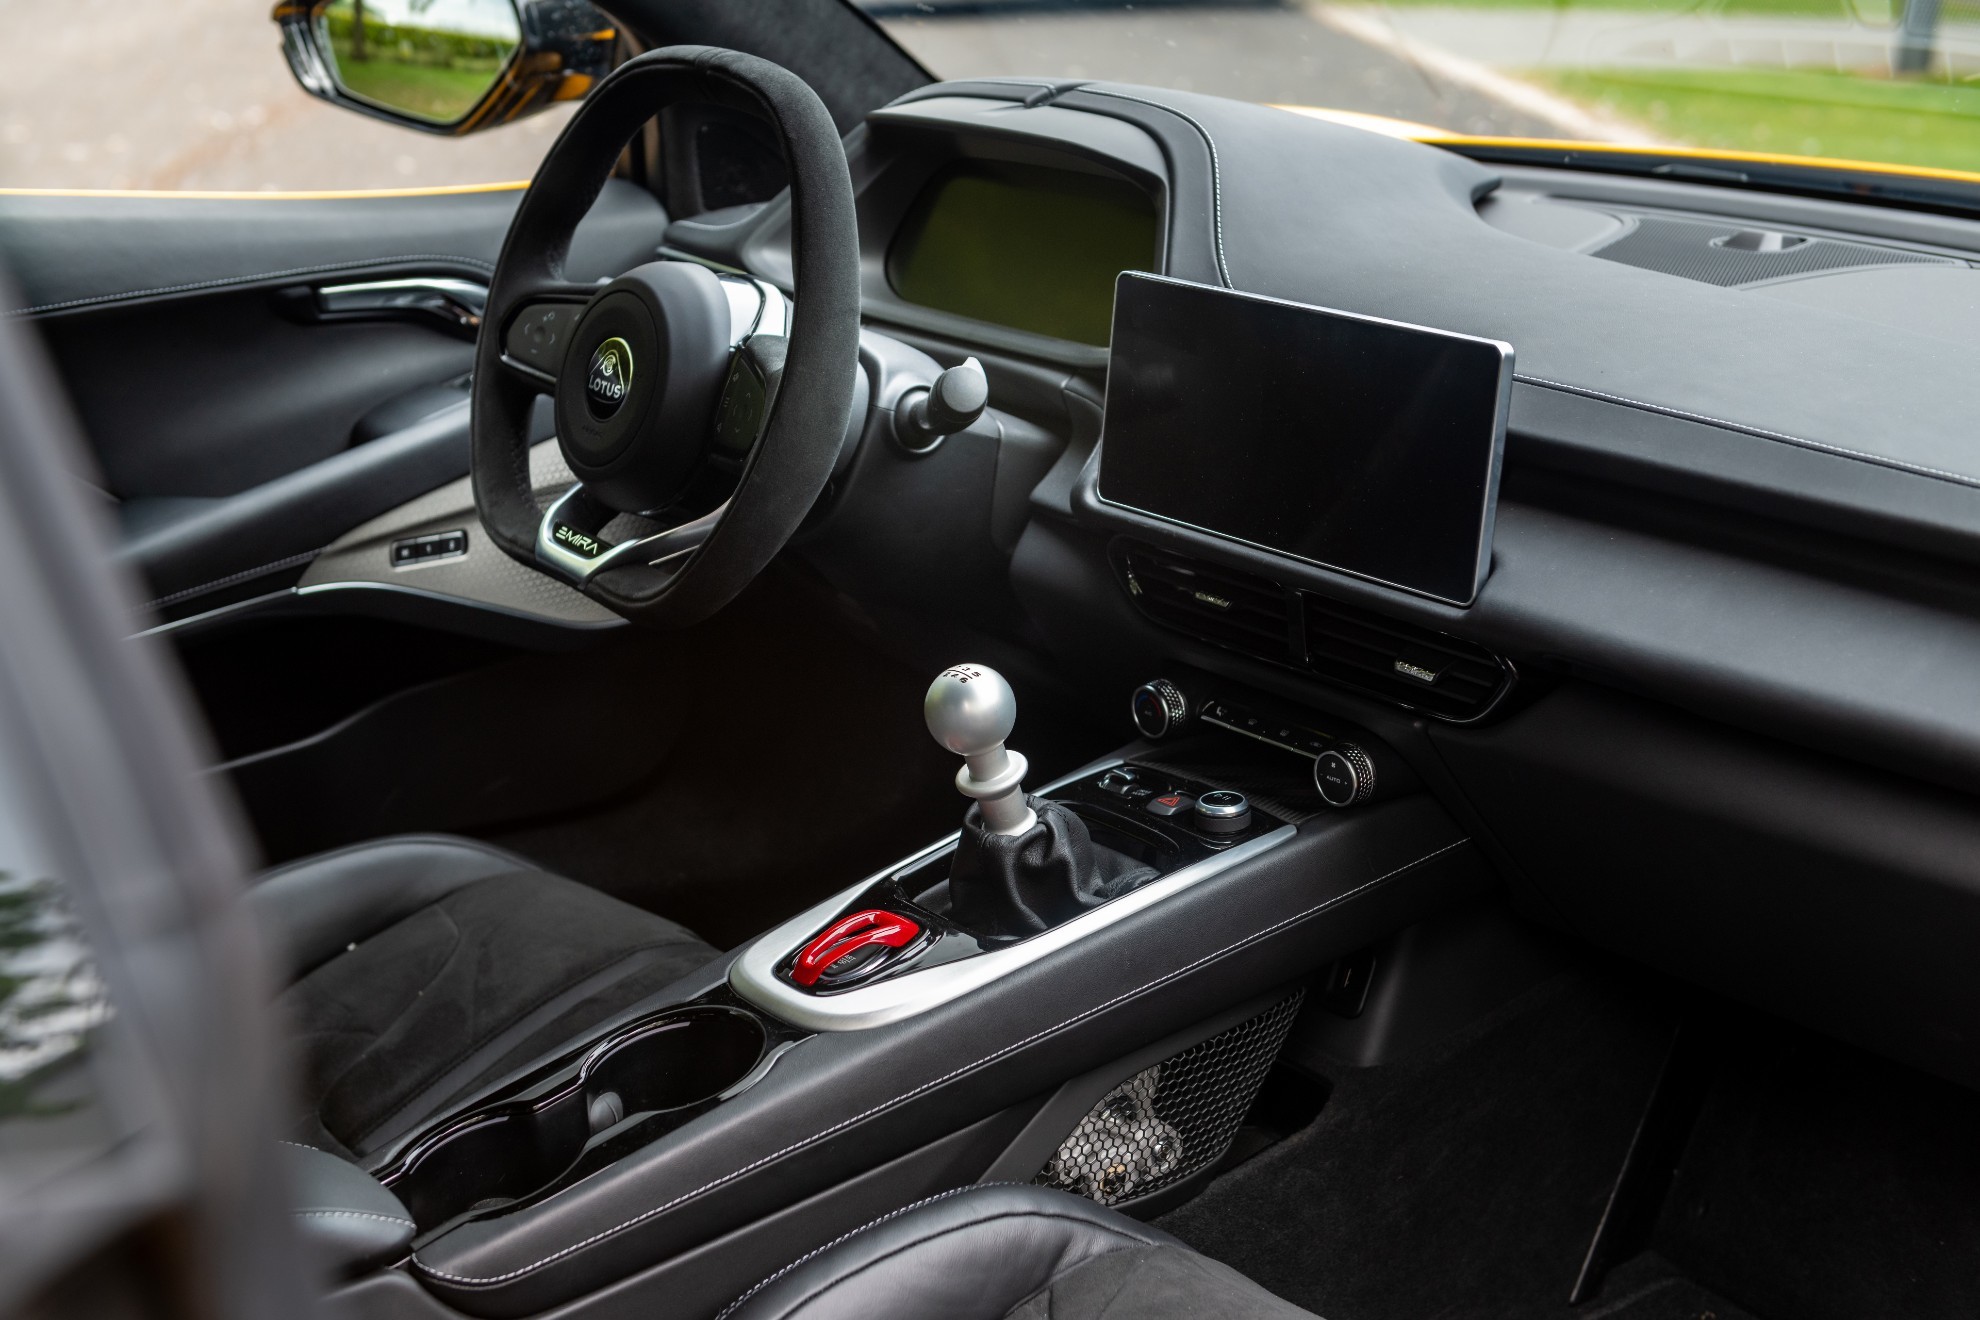 El interior da un salto de calidad y tecnología respecto a Lotus precedentes.